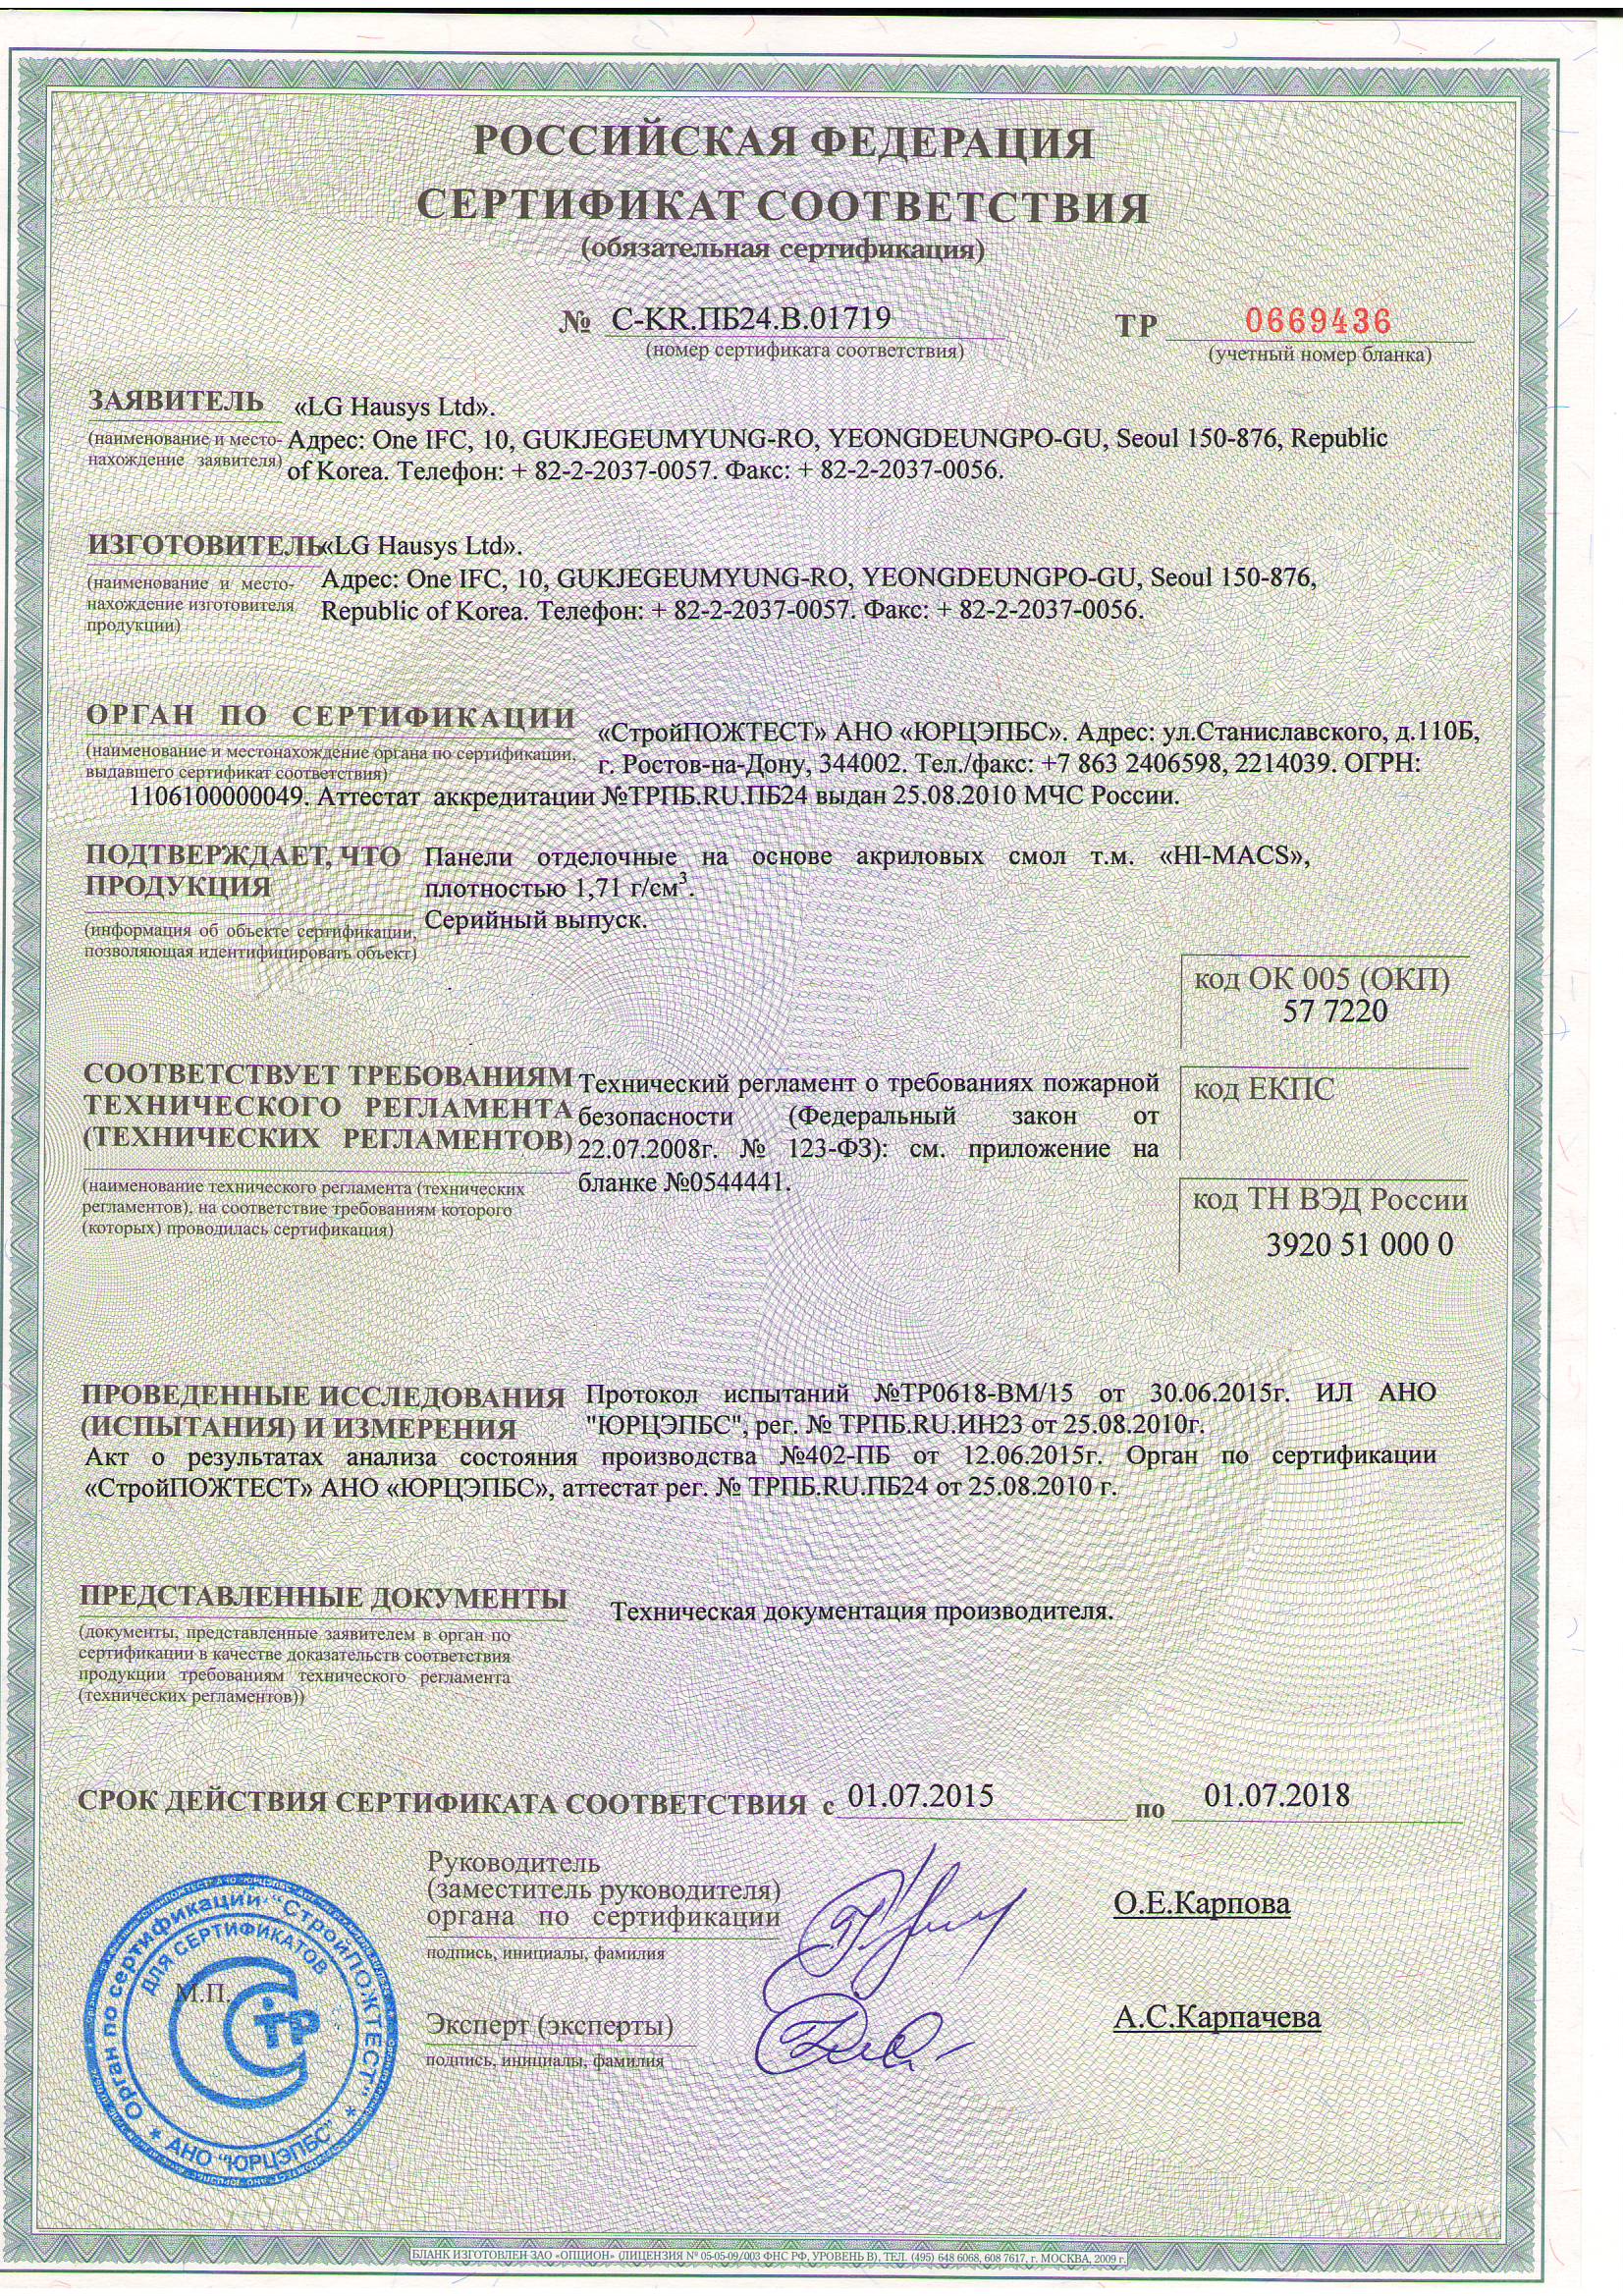 Сертификат соответствия Российской Федерации LG Hi-Macs